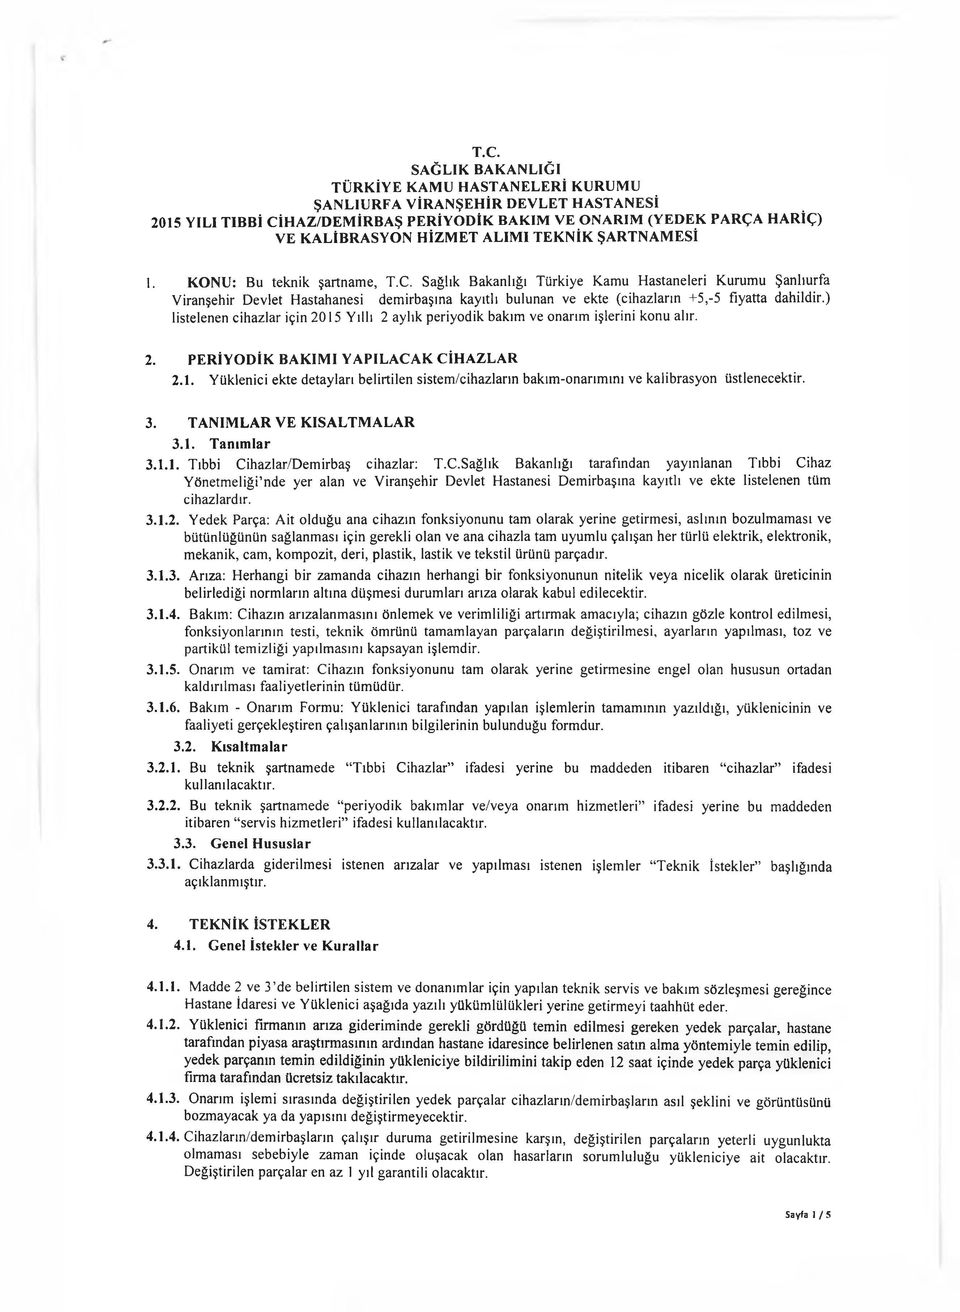 Sağlık Bakanlığı Türkiye Kamu H astaneleri Kurum u Şanlıurfa Viranşehir Devlet H astahanesi dem irbaşına kayıtlı bulunan ve ekte (cihazların +5,5 fiyatta dahildir.